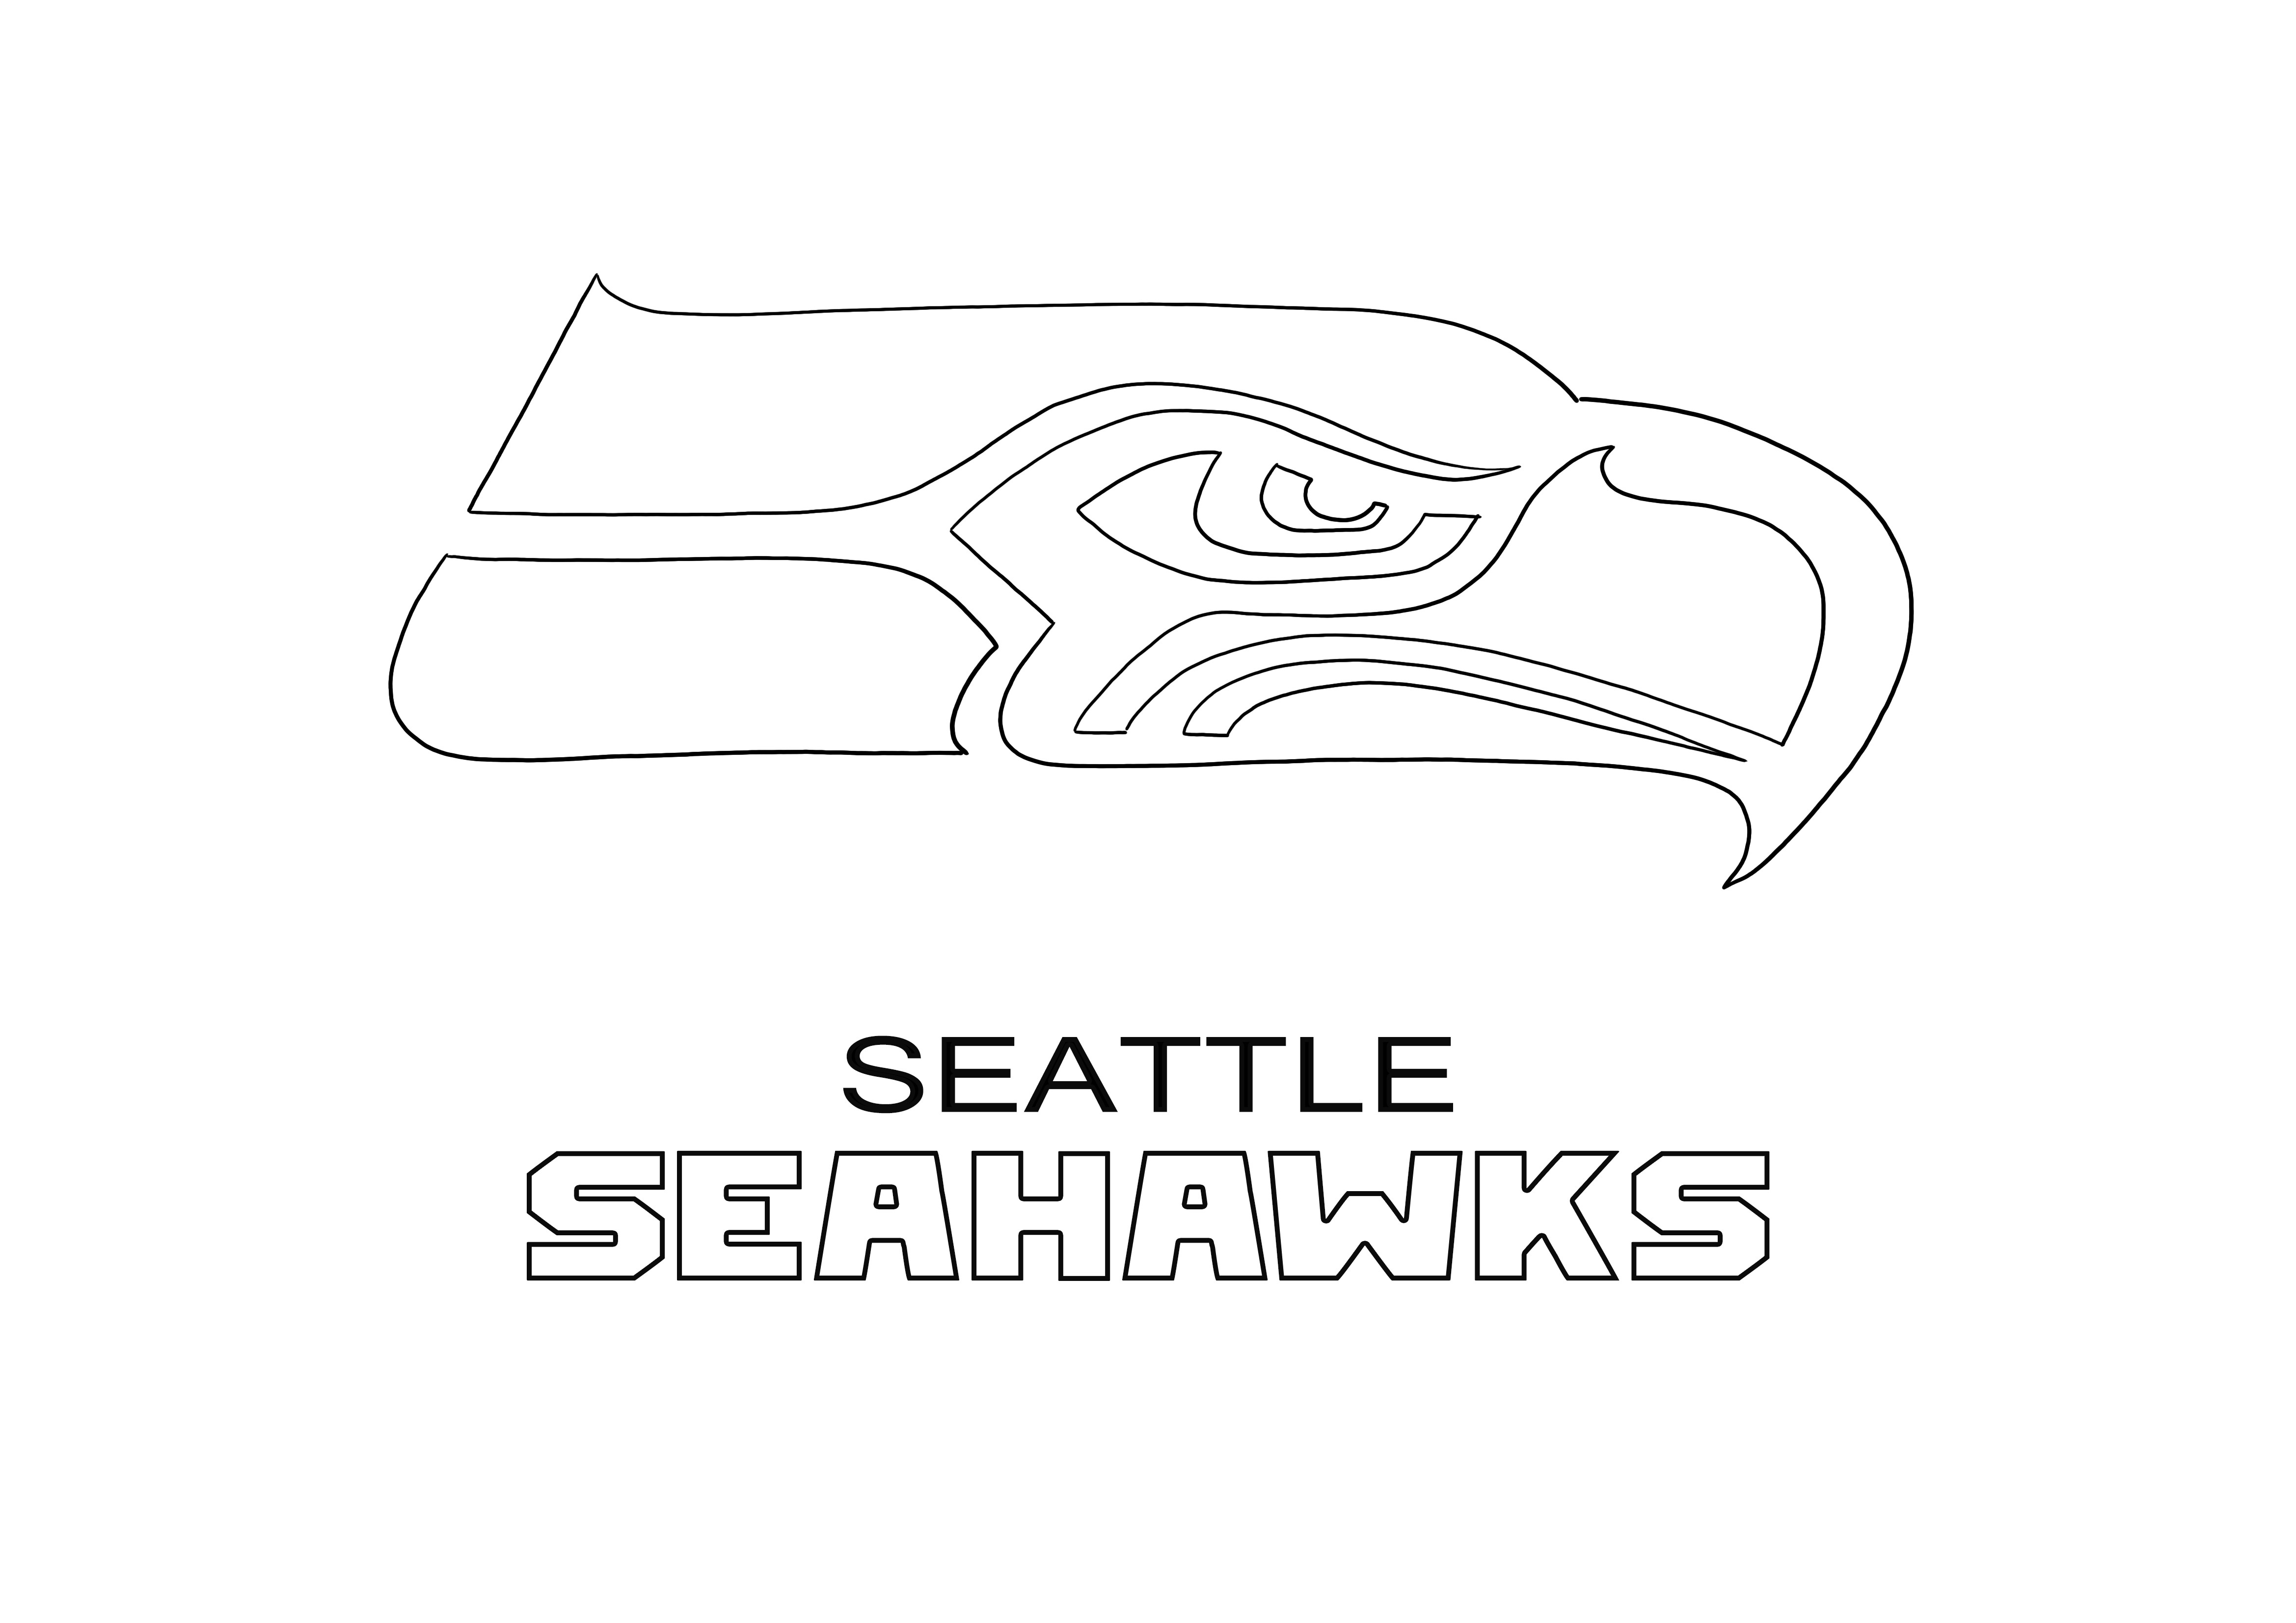 Her yaştan çocuklar için Seattle Seahawks Logosu ücretsiz baskı ve kolay boyama